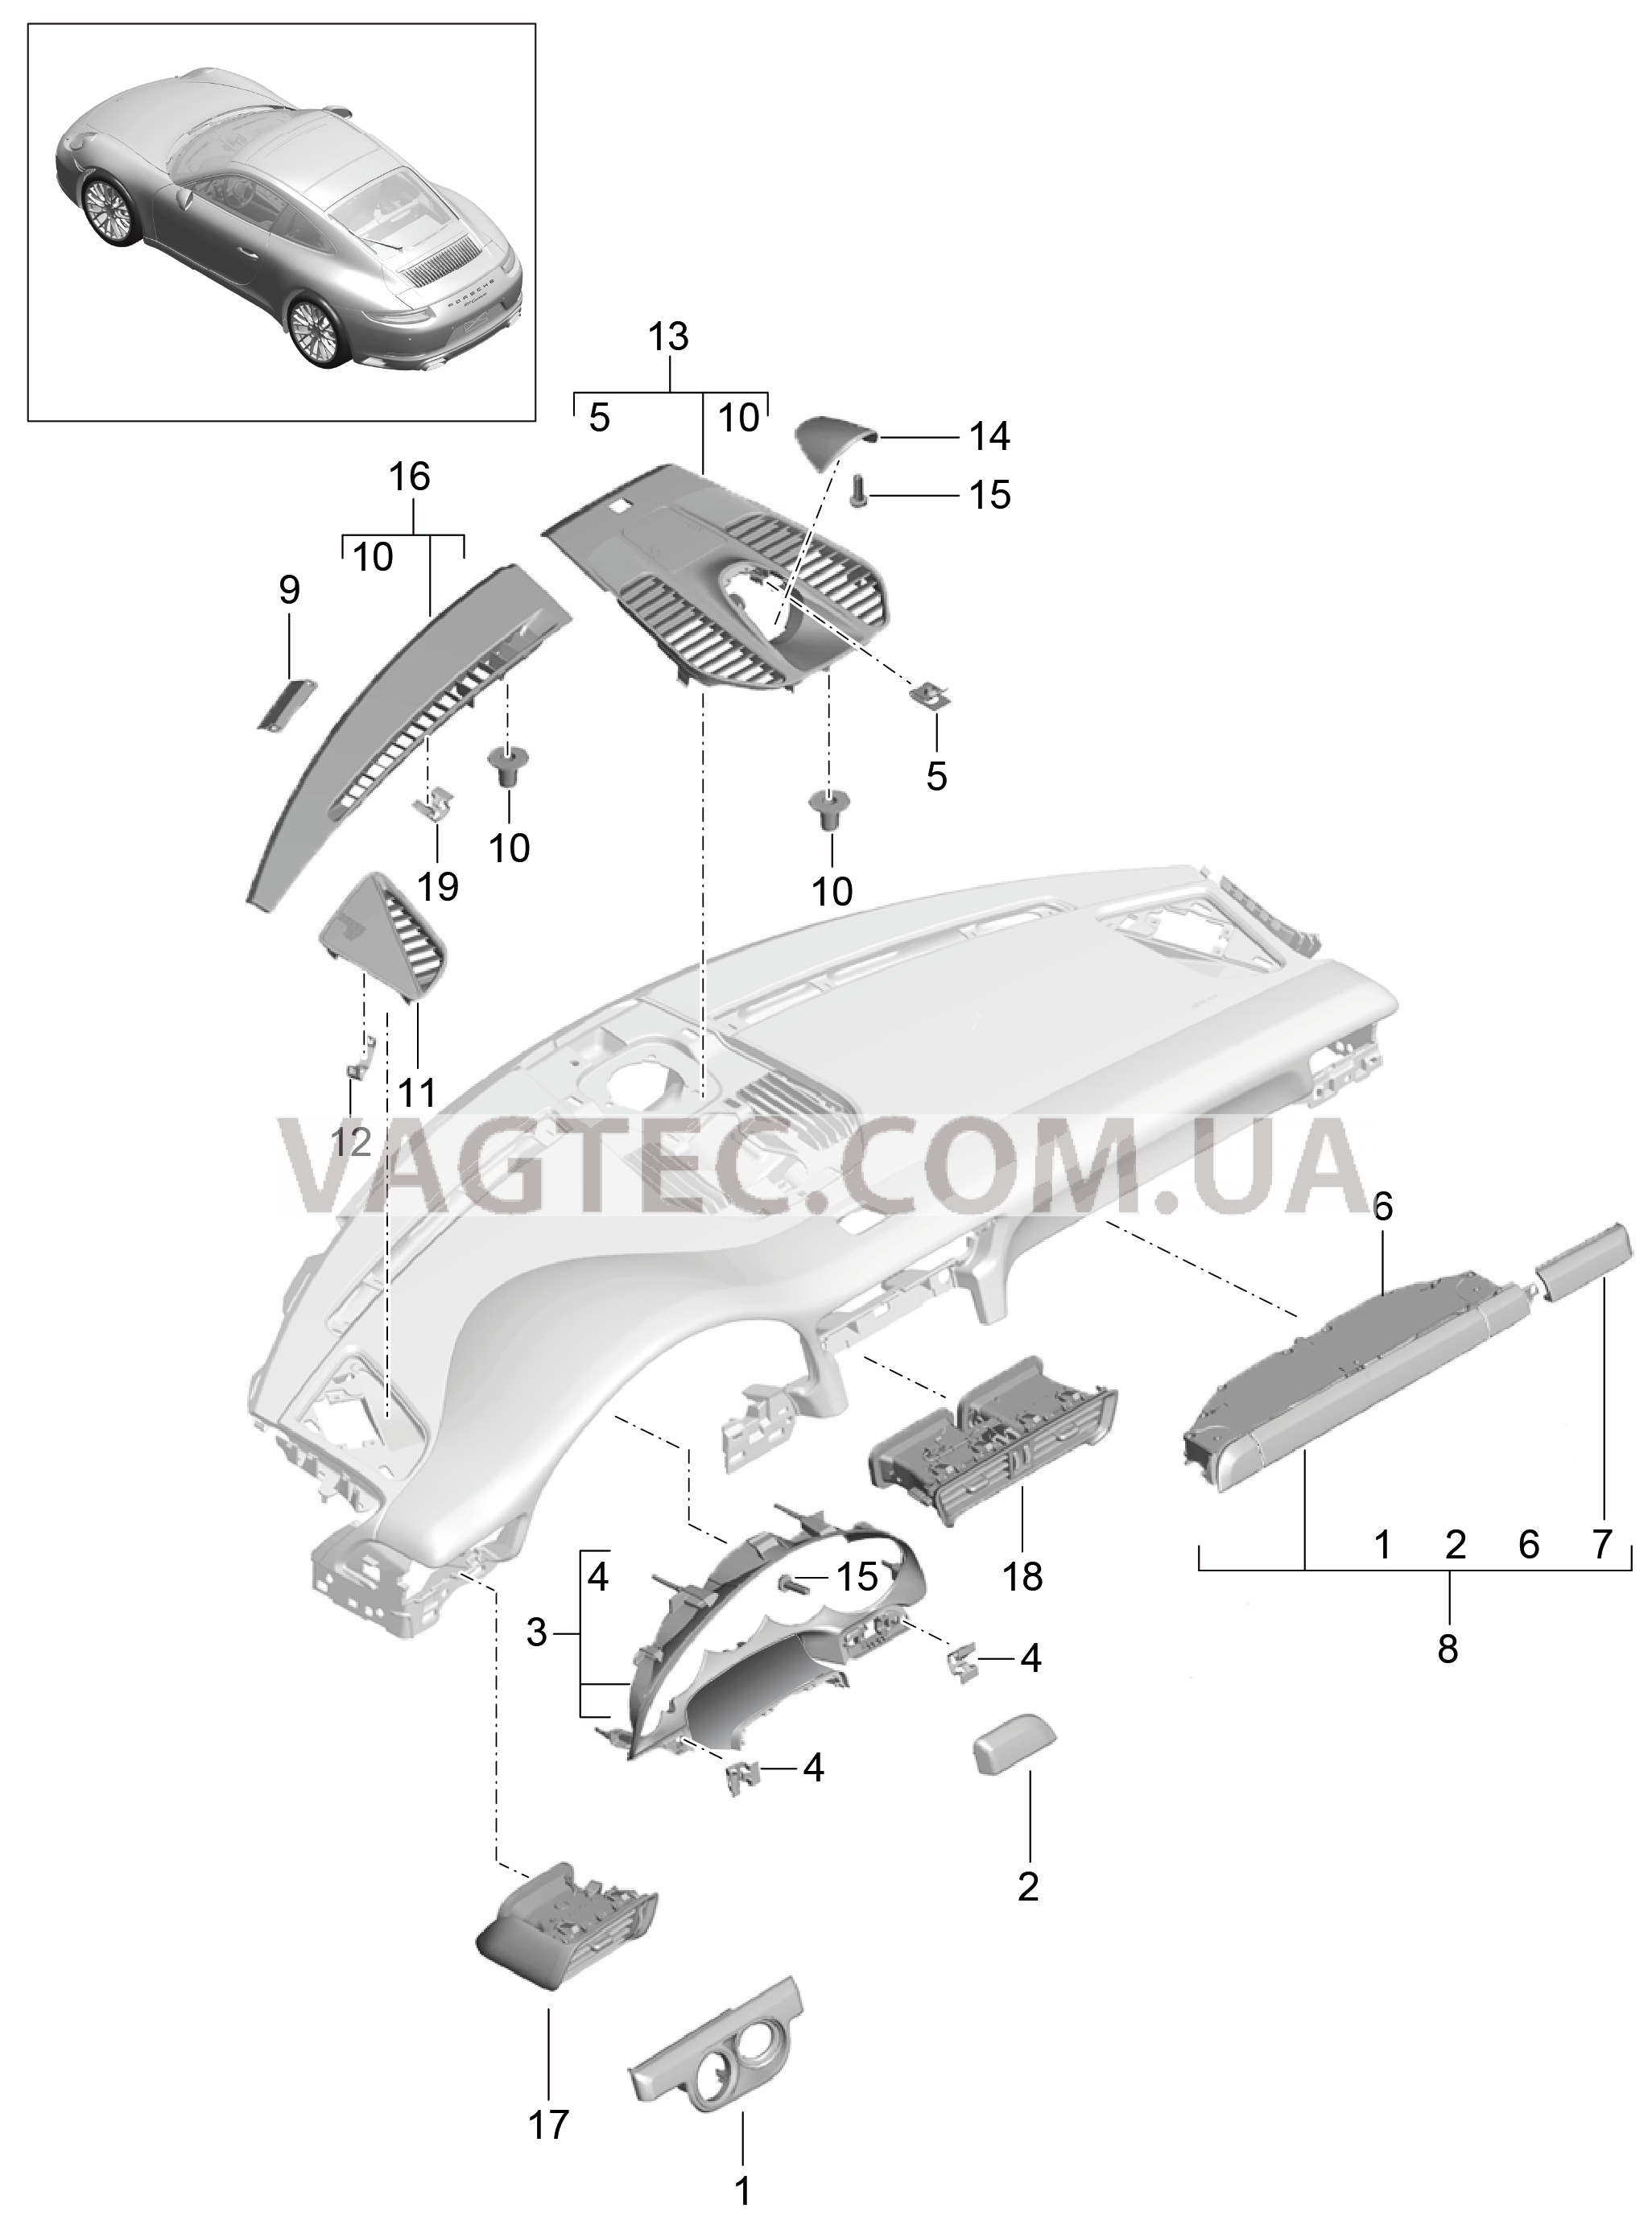 809-005 Детали, Облицовка передней панели, Верхняя часть для PORSCHE 911.Carrera 2017-2018USA